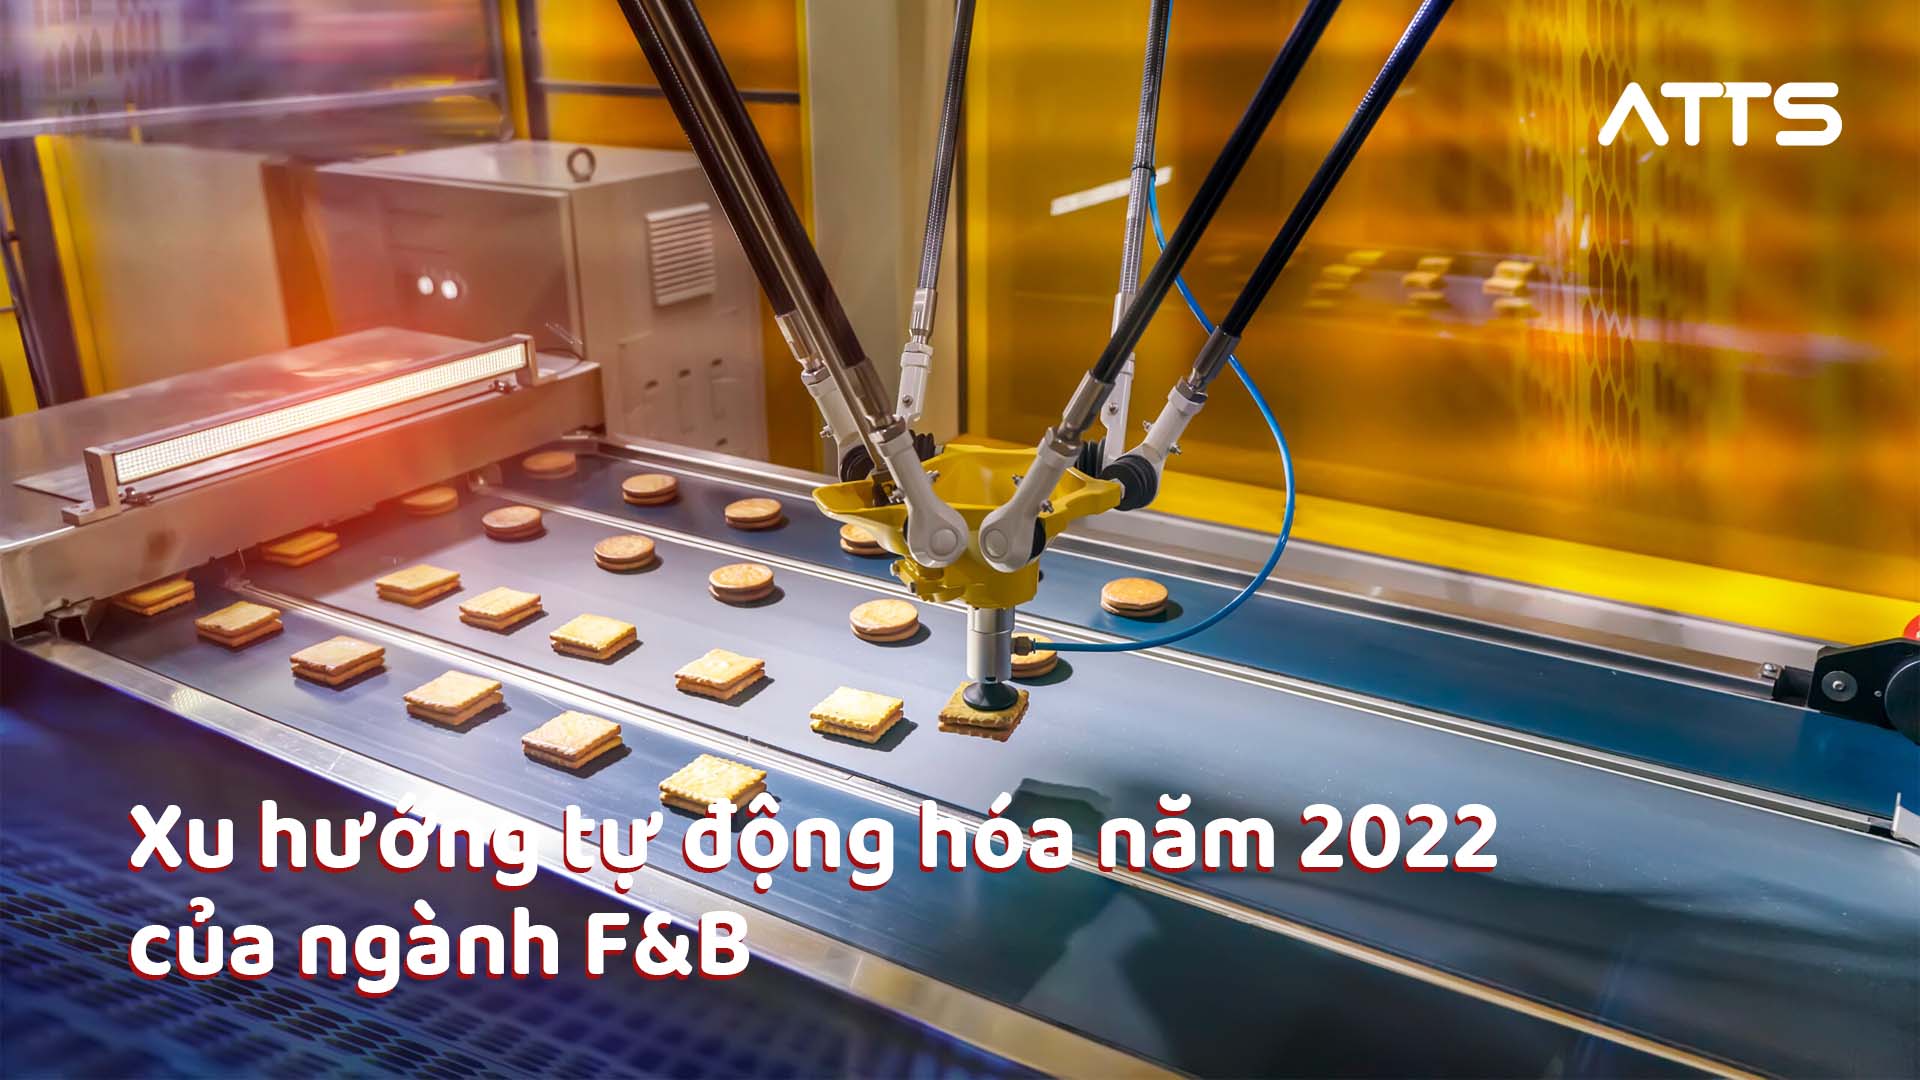 Xu hướng tự động hóa năm 2022 của ngành F&B